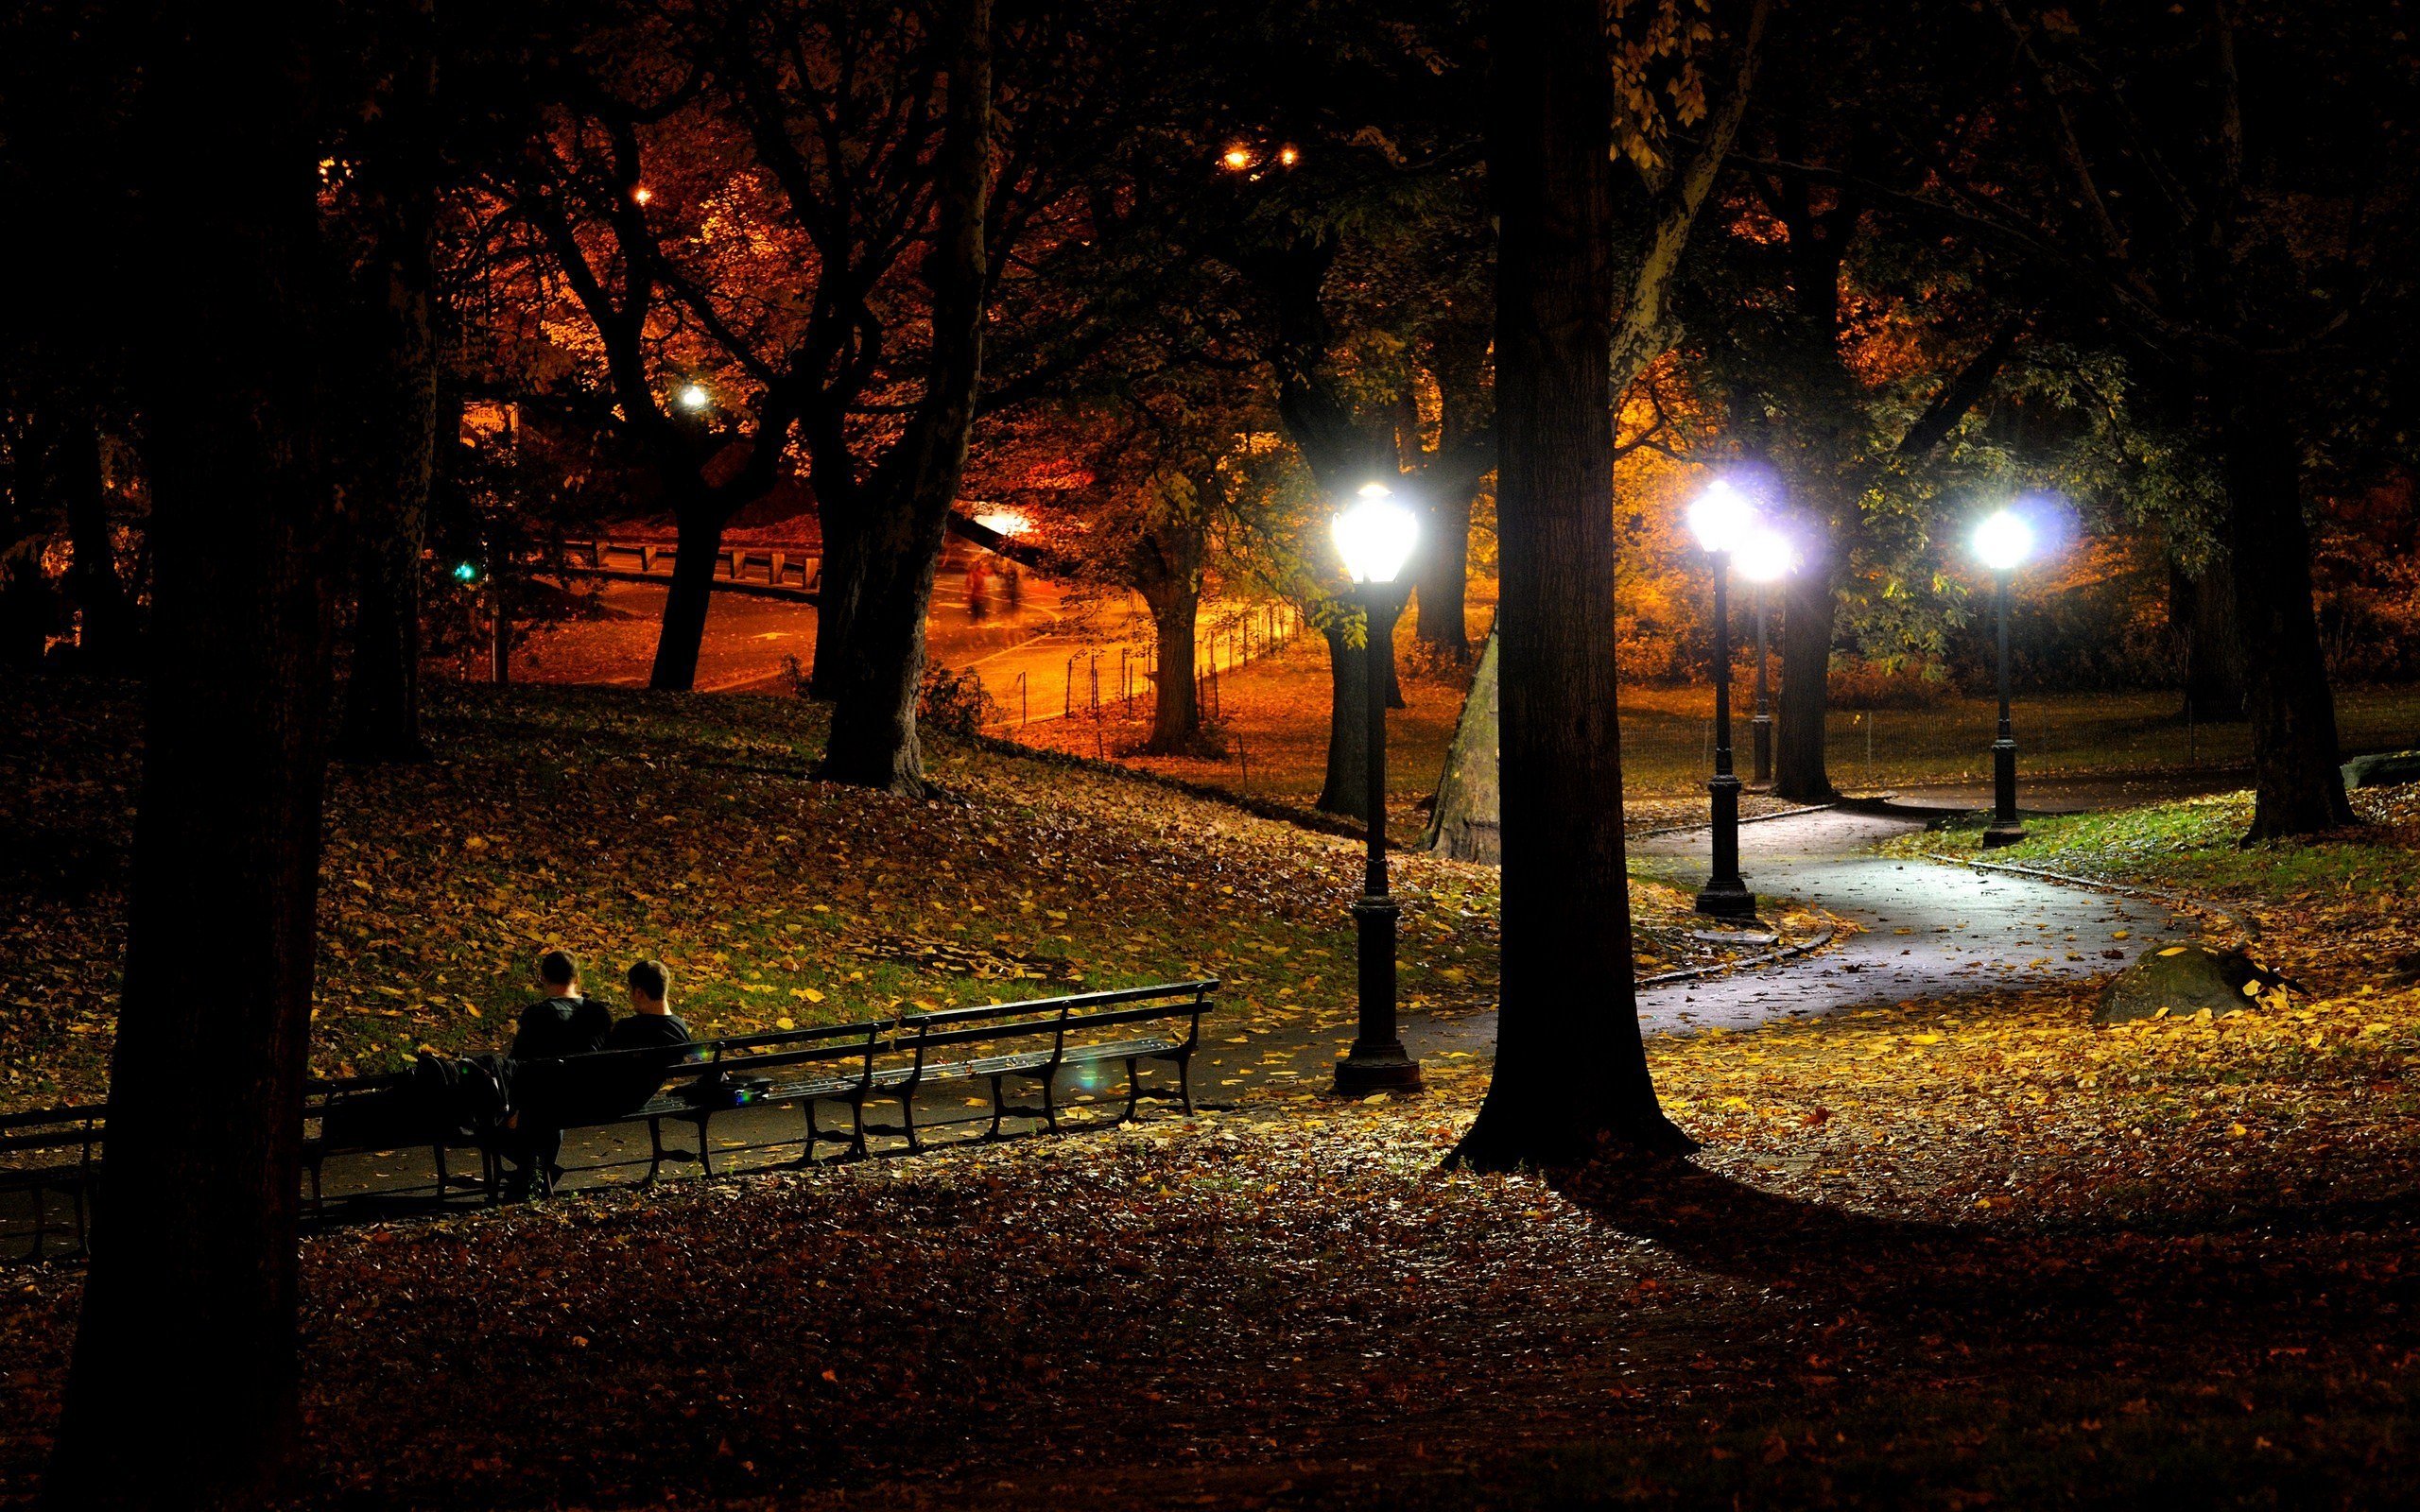 Тема поздней вечером. Кагальник парк ночью. Ночной парк Красноперекопска. Осенний вечер. Вечерний осенний парк.